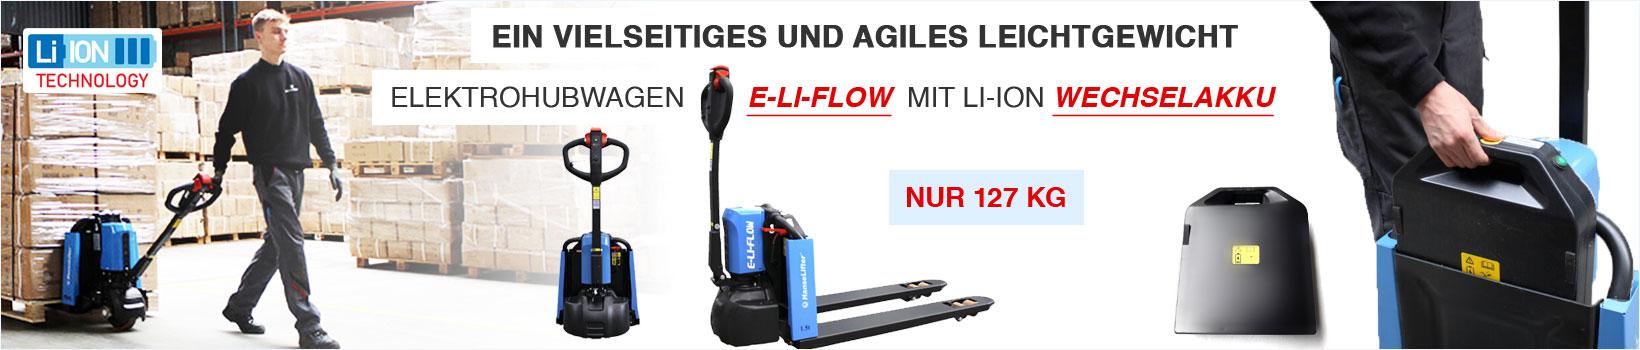 HanseLifter Elektrohubwagen E-LI-FLOW